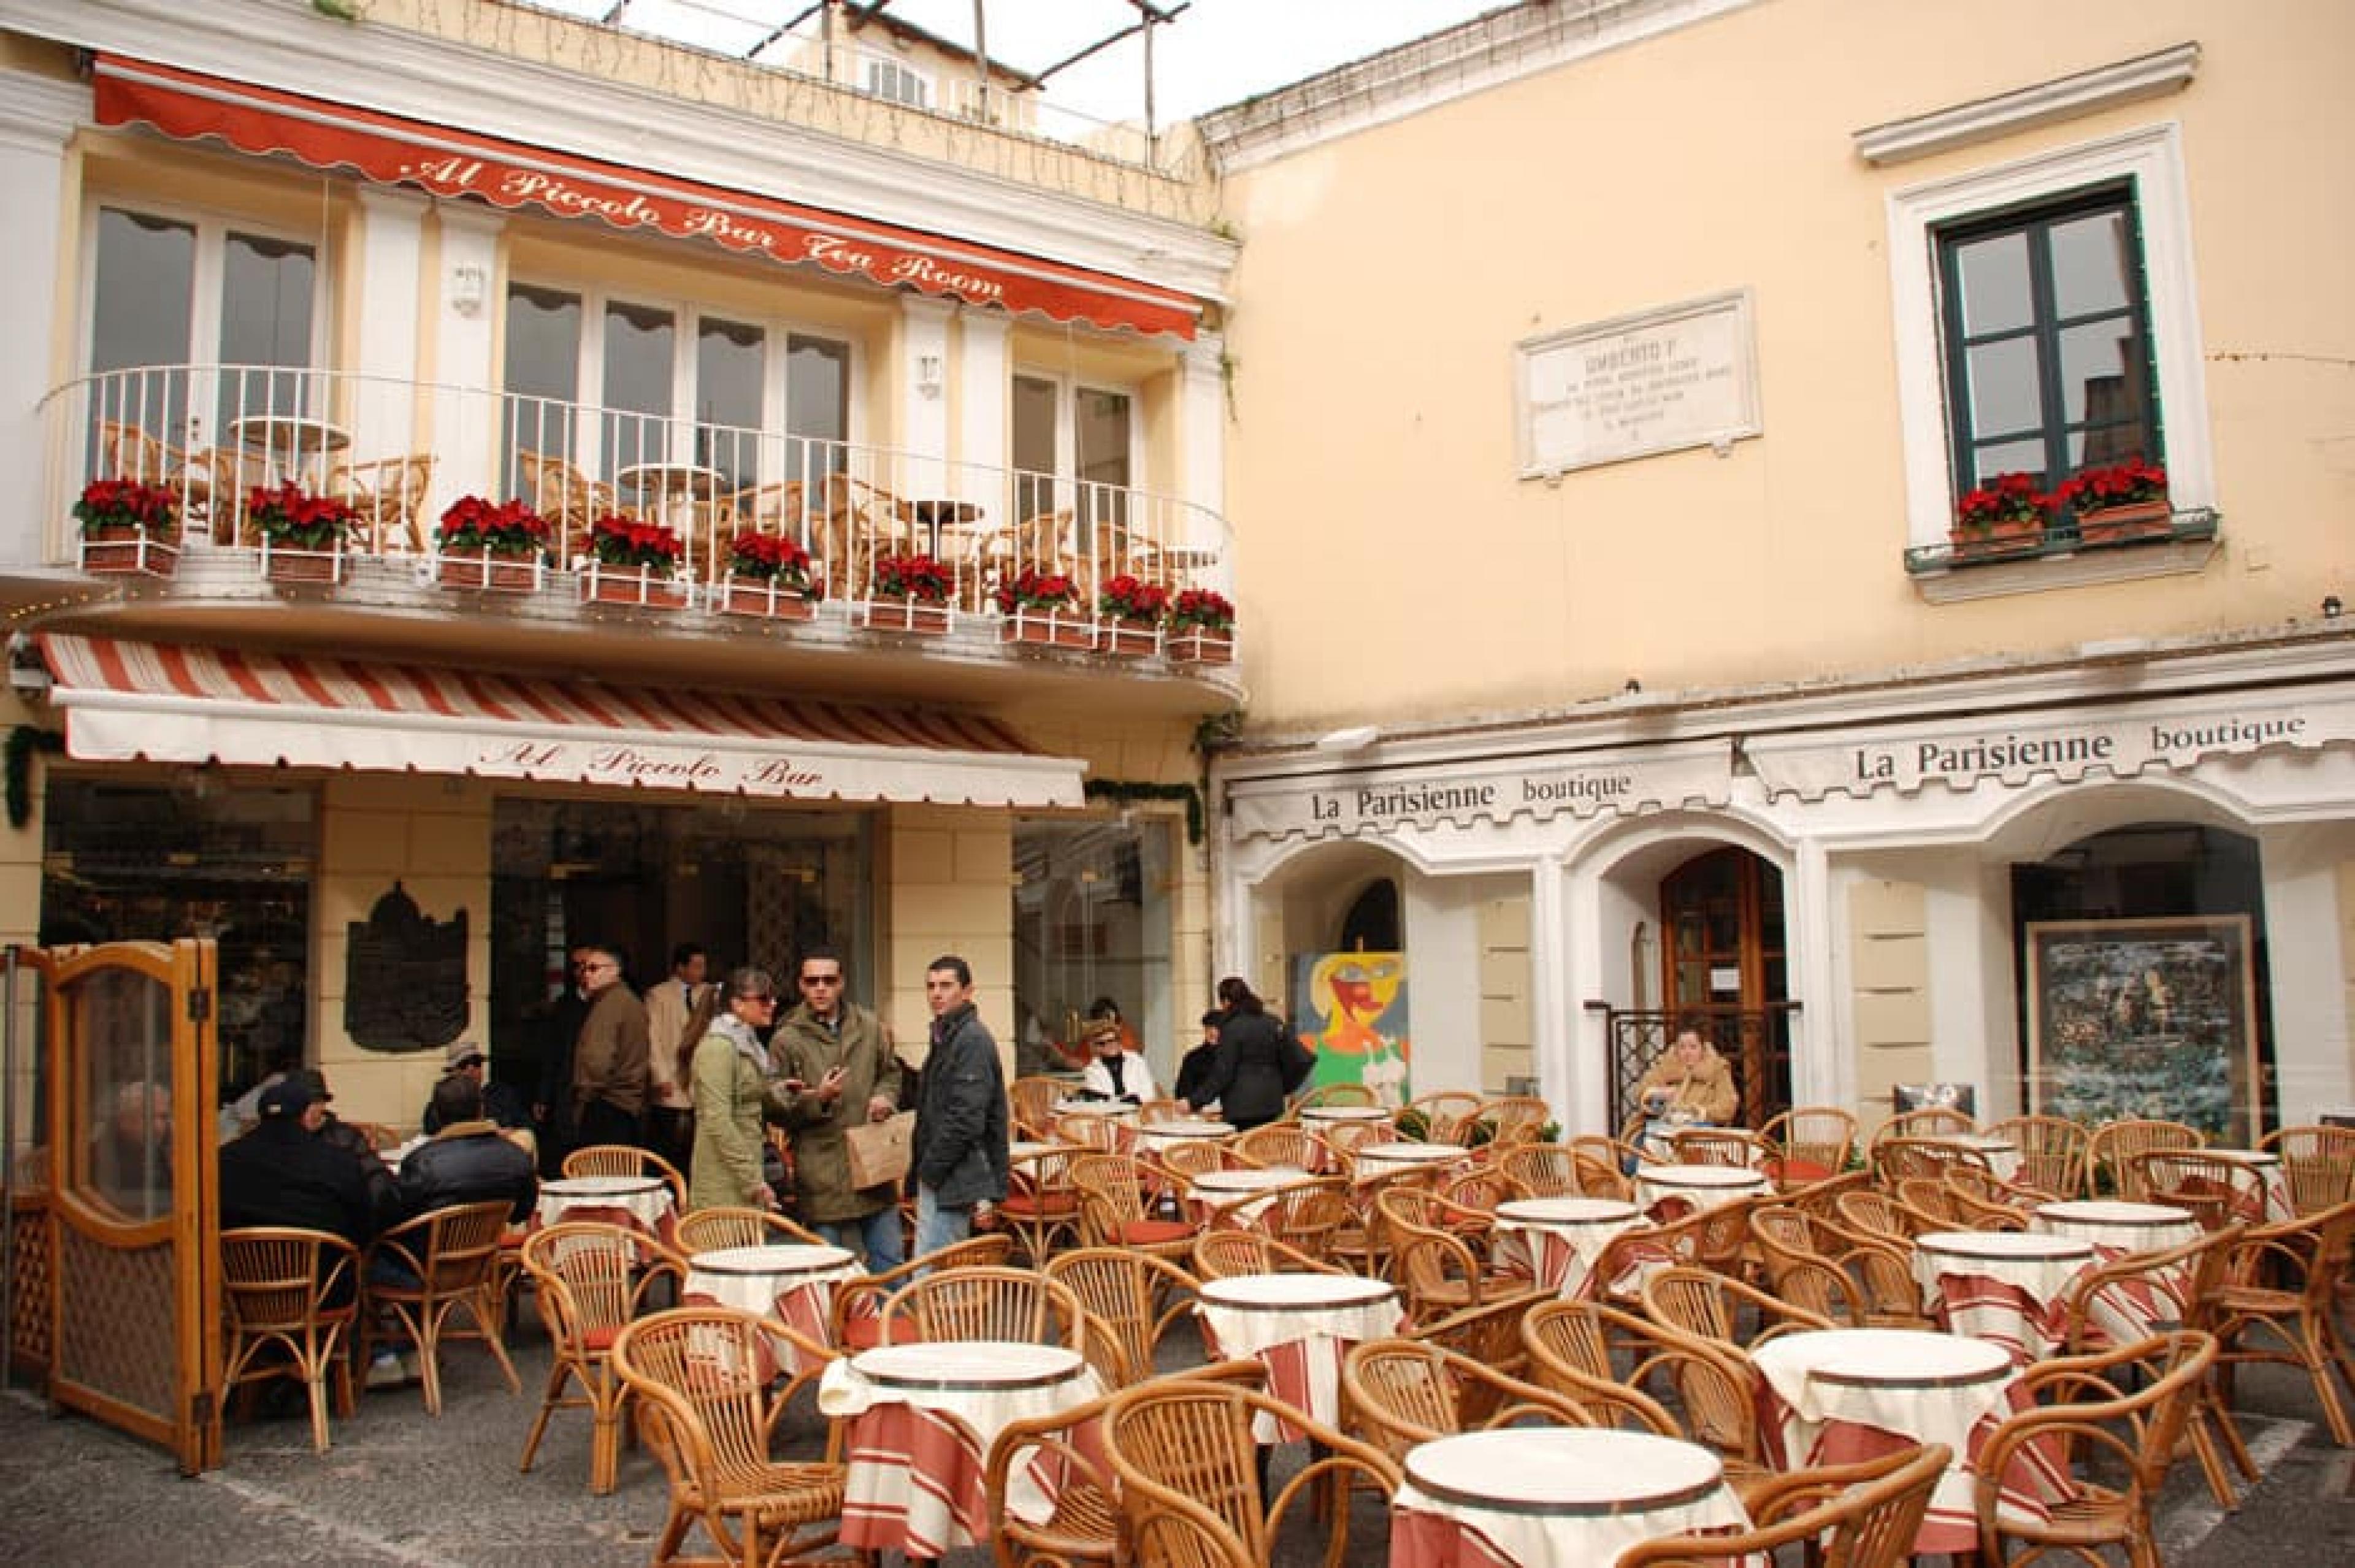 Outdoor Lounge at Al Piccolo Bar, Capri, Italy - Courtesy of Antonio Manfredonio